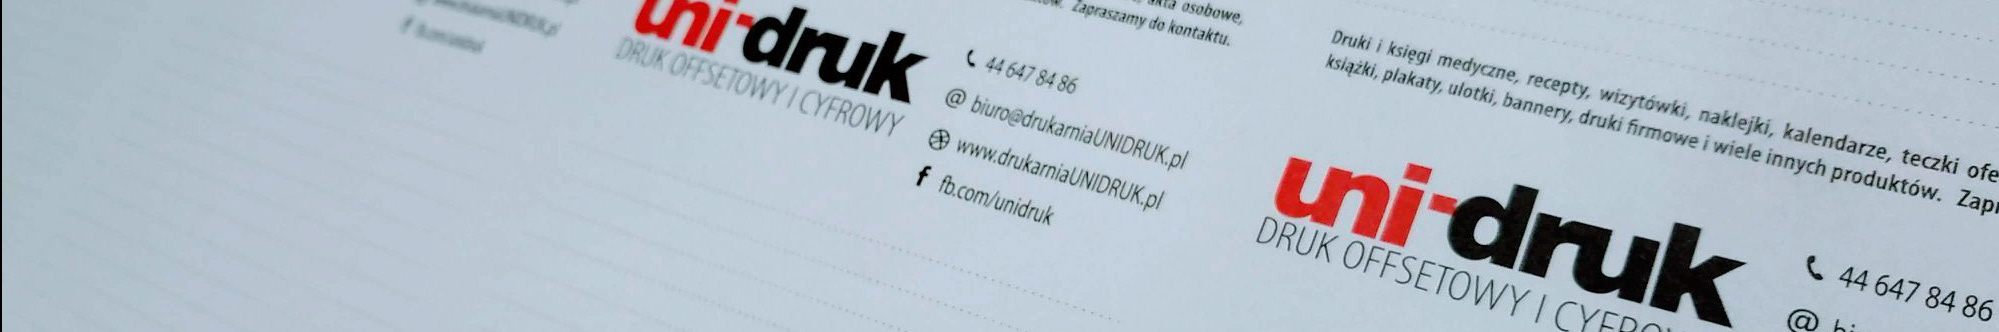 Drukarnia UniDruk Sklep's profile banner